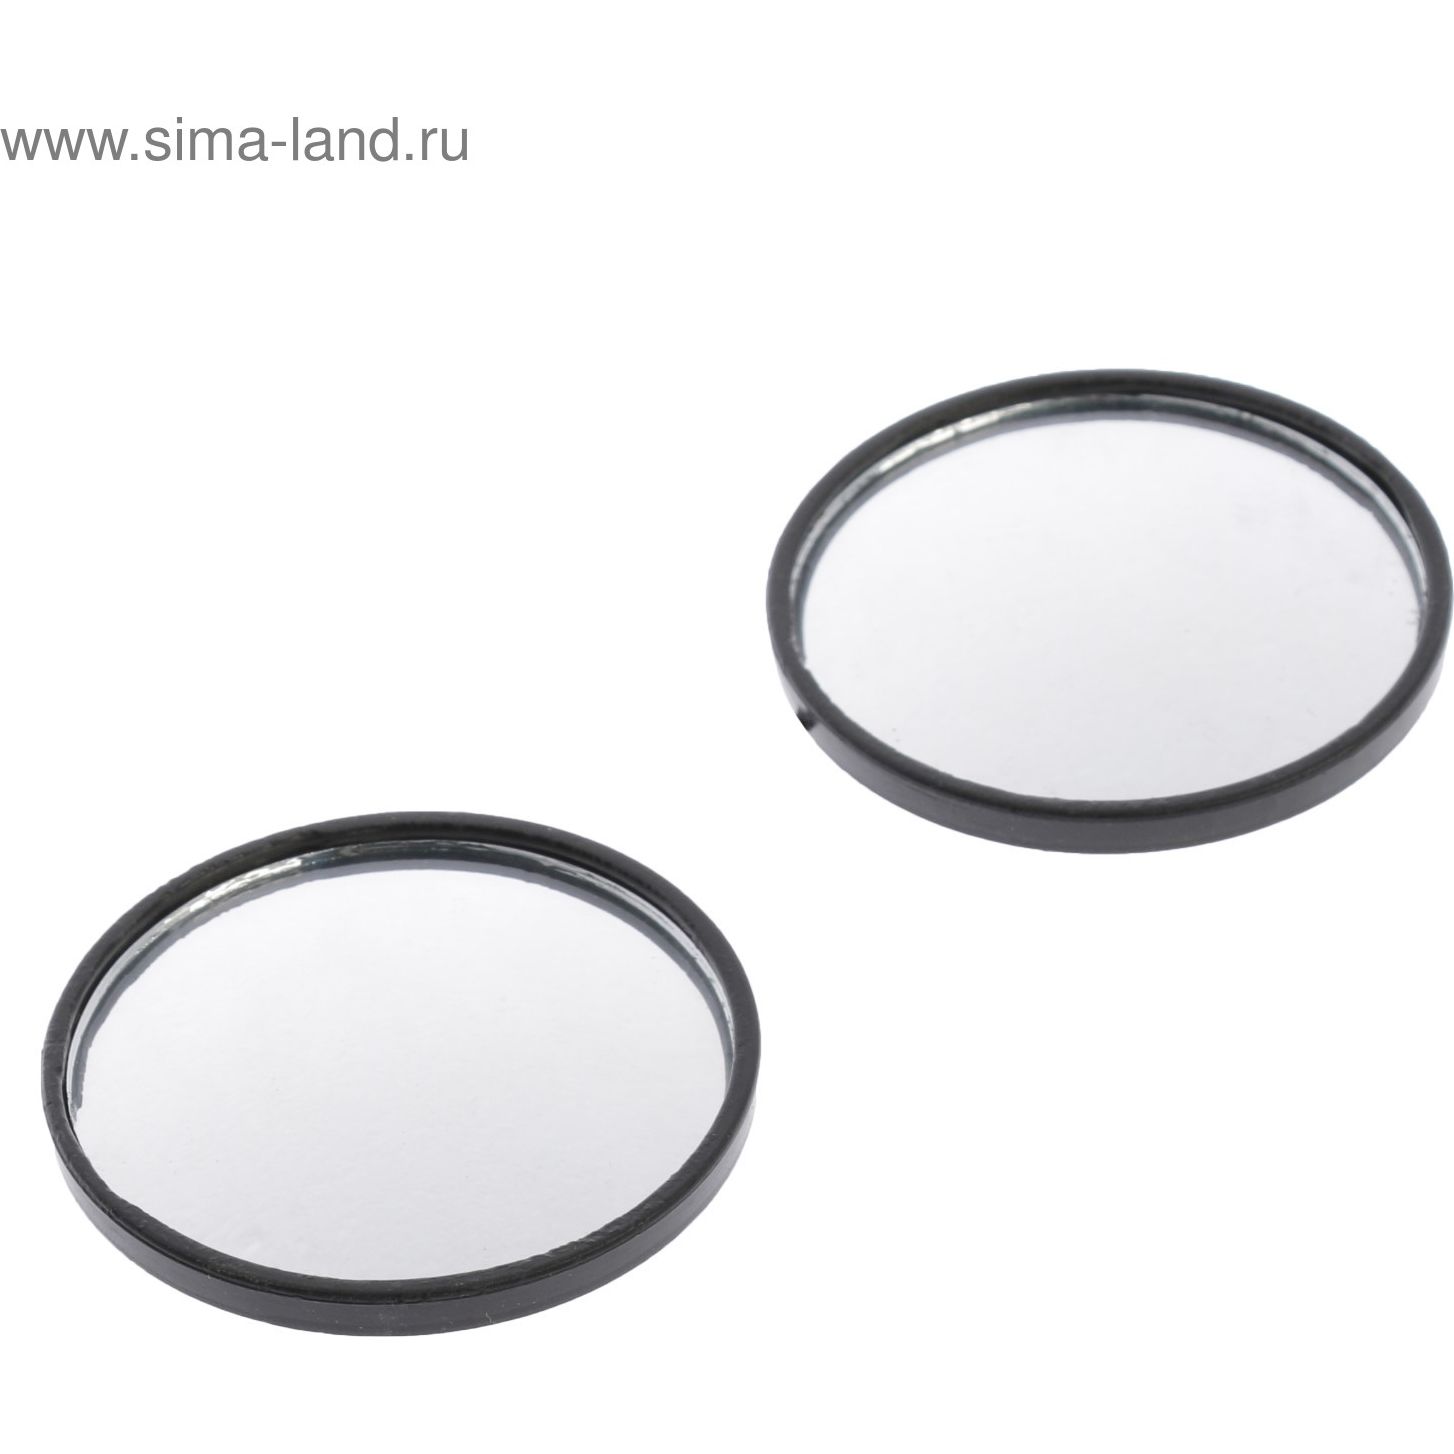 Зеркало сферическое, 50 мм, серый, набор 2 шт   680765